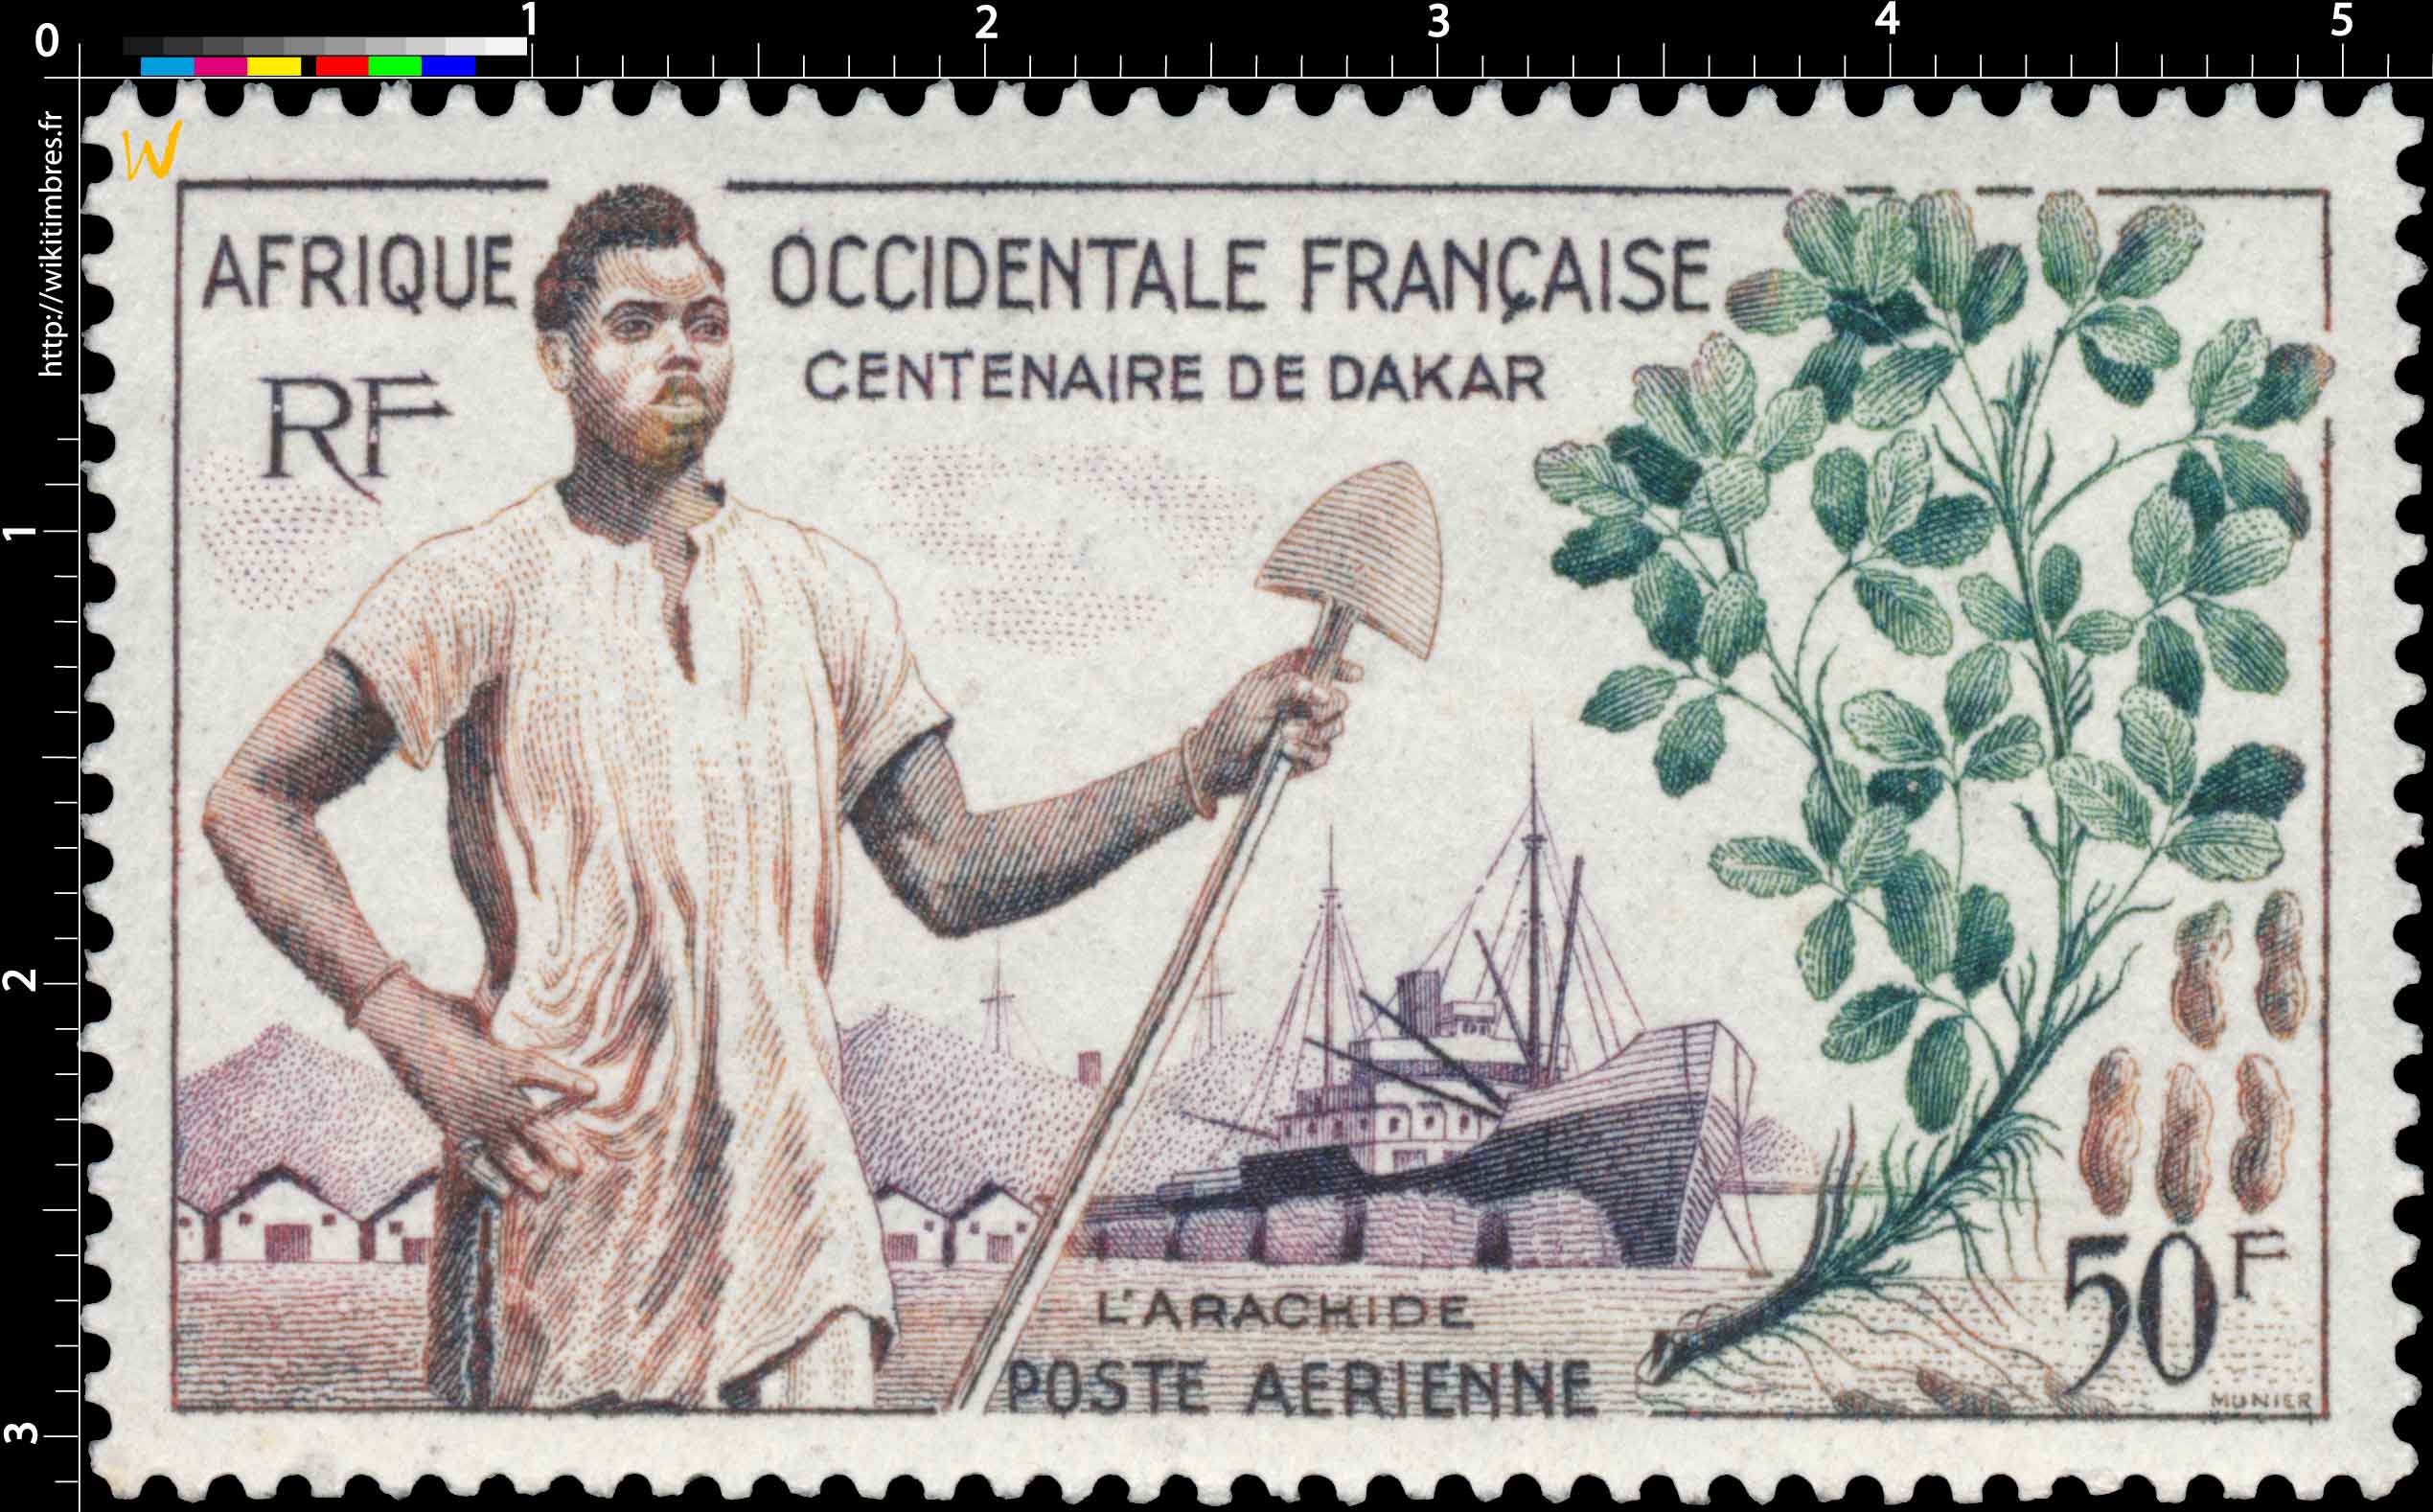 Afrique Occidentale Française - Centenaire de Dakar, l'arachide